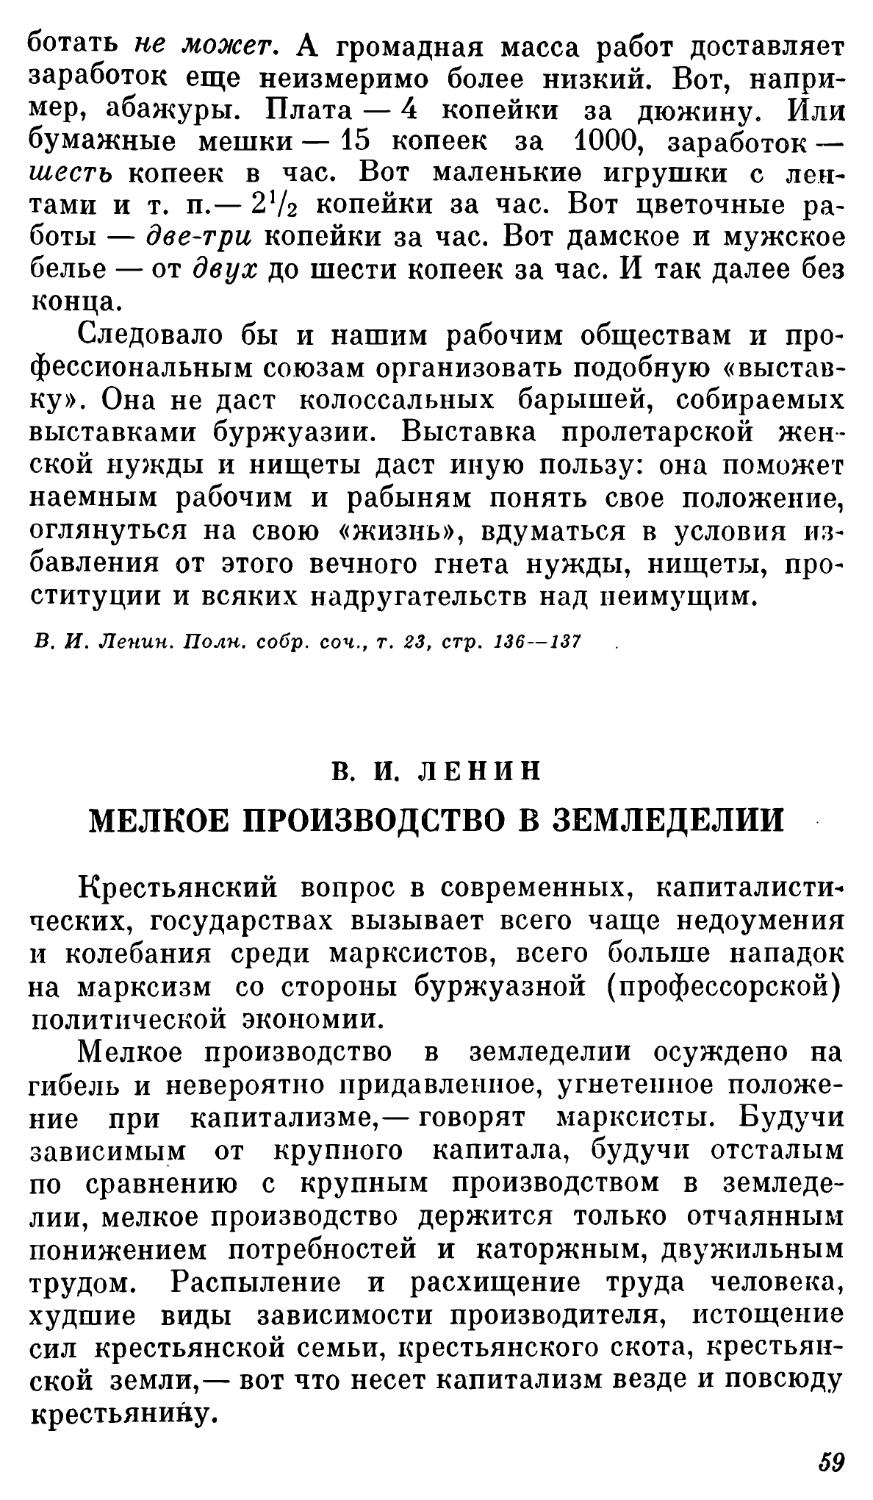 В. И. Ленин. МЕЛКОЕ ПРОИЗВОДСТВО В ЗЕМЛЕДЕЛИИ